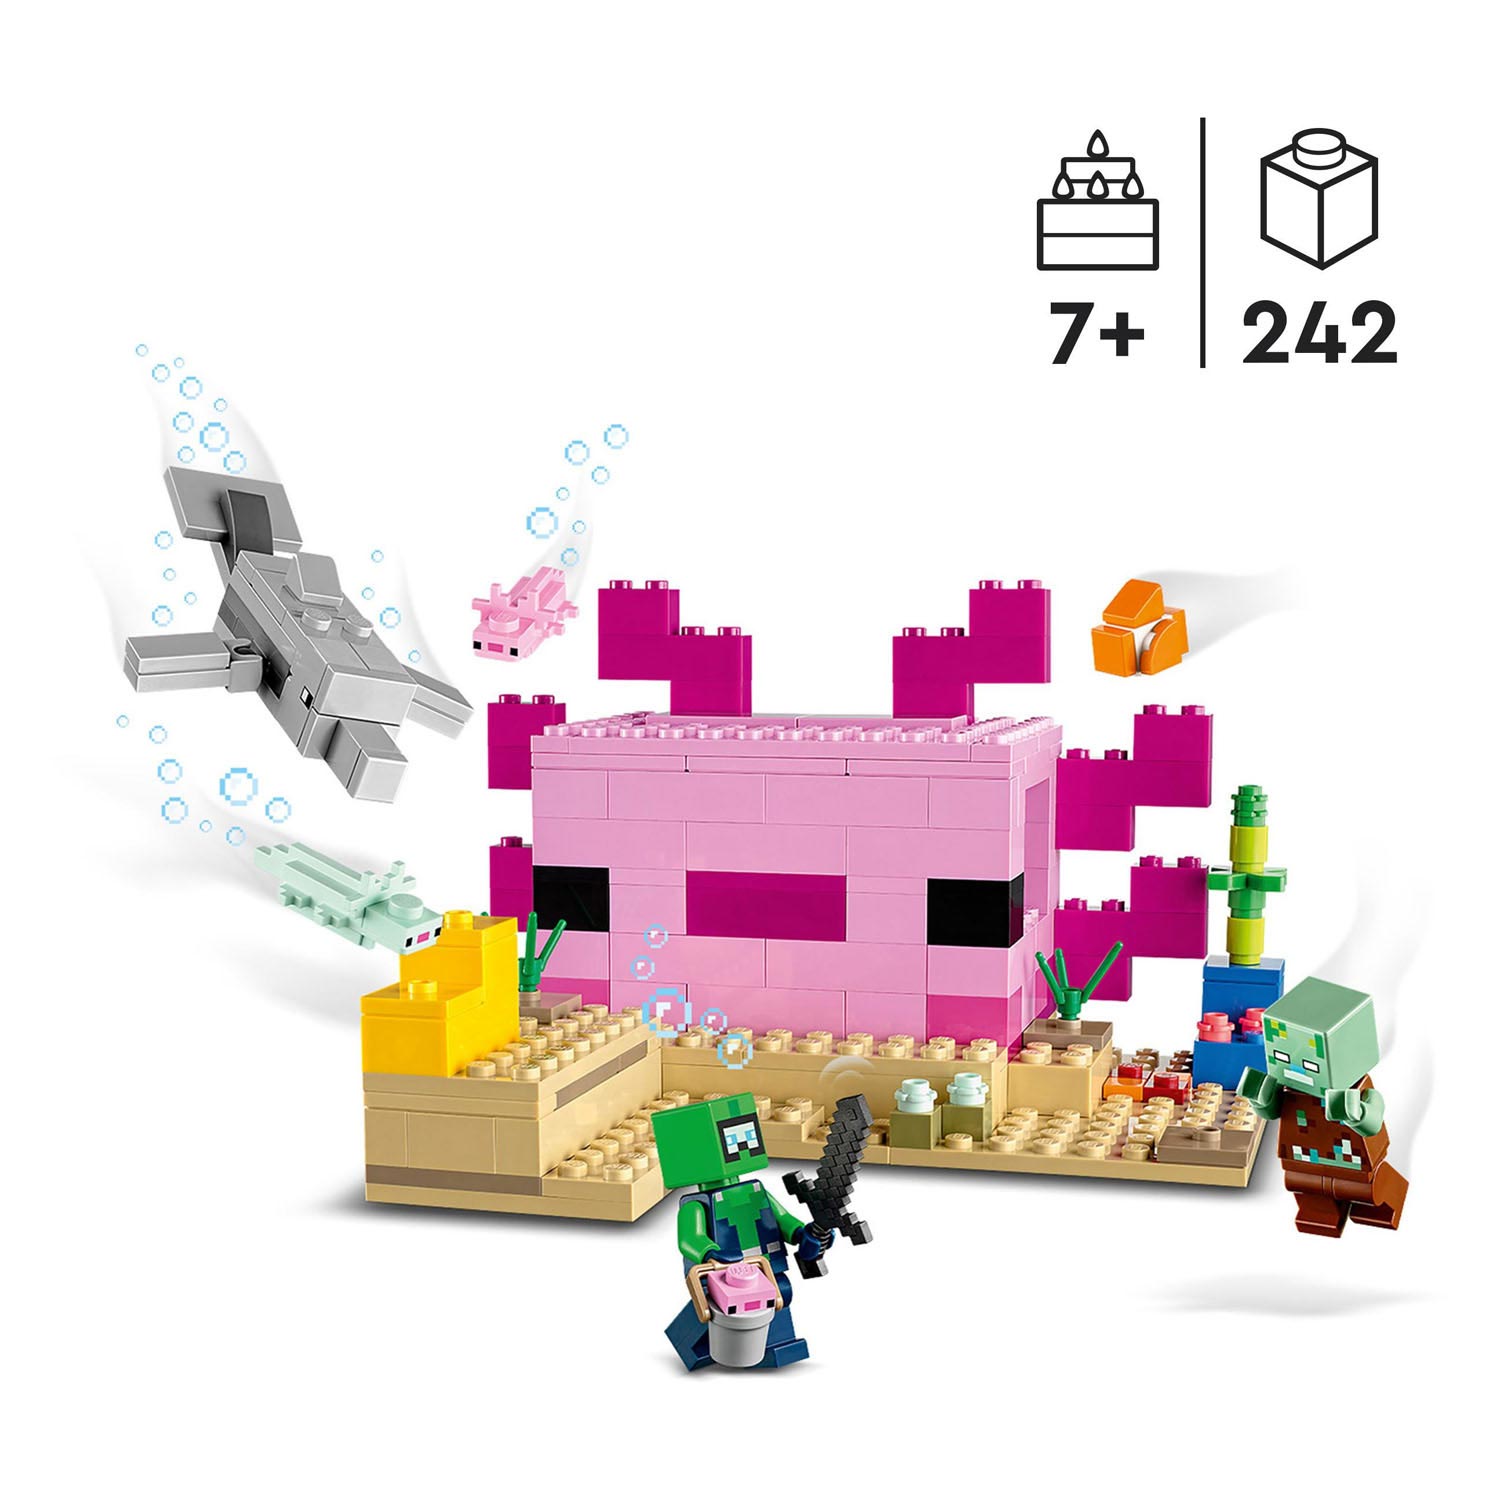 21247 LEGO Minecraft Das Axolotl-Haus